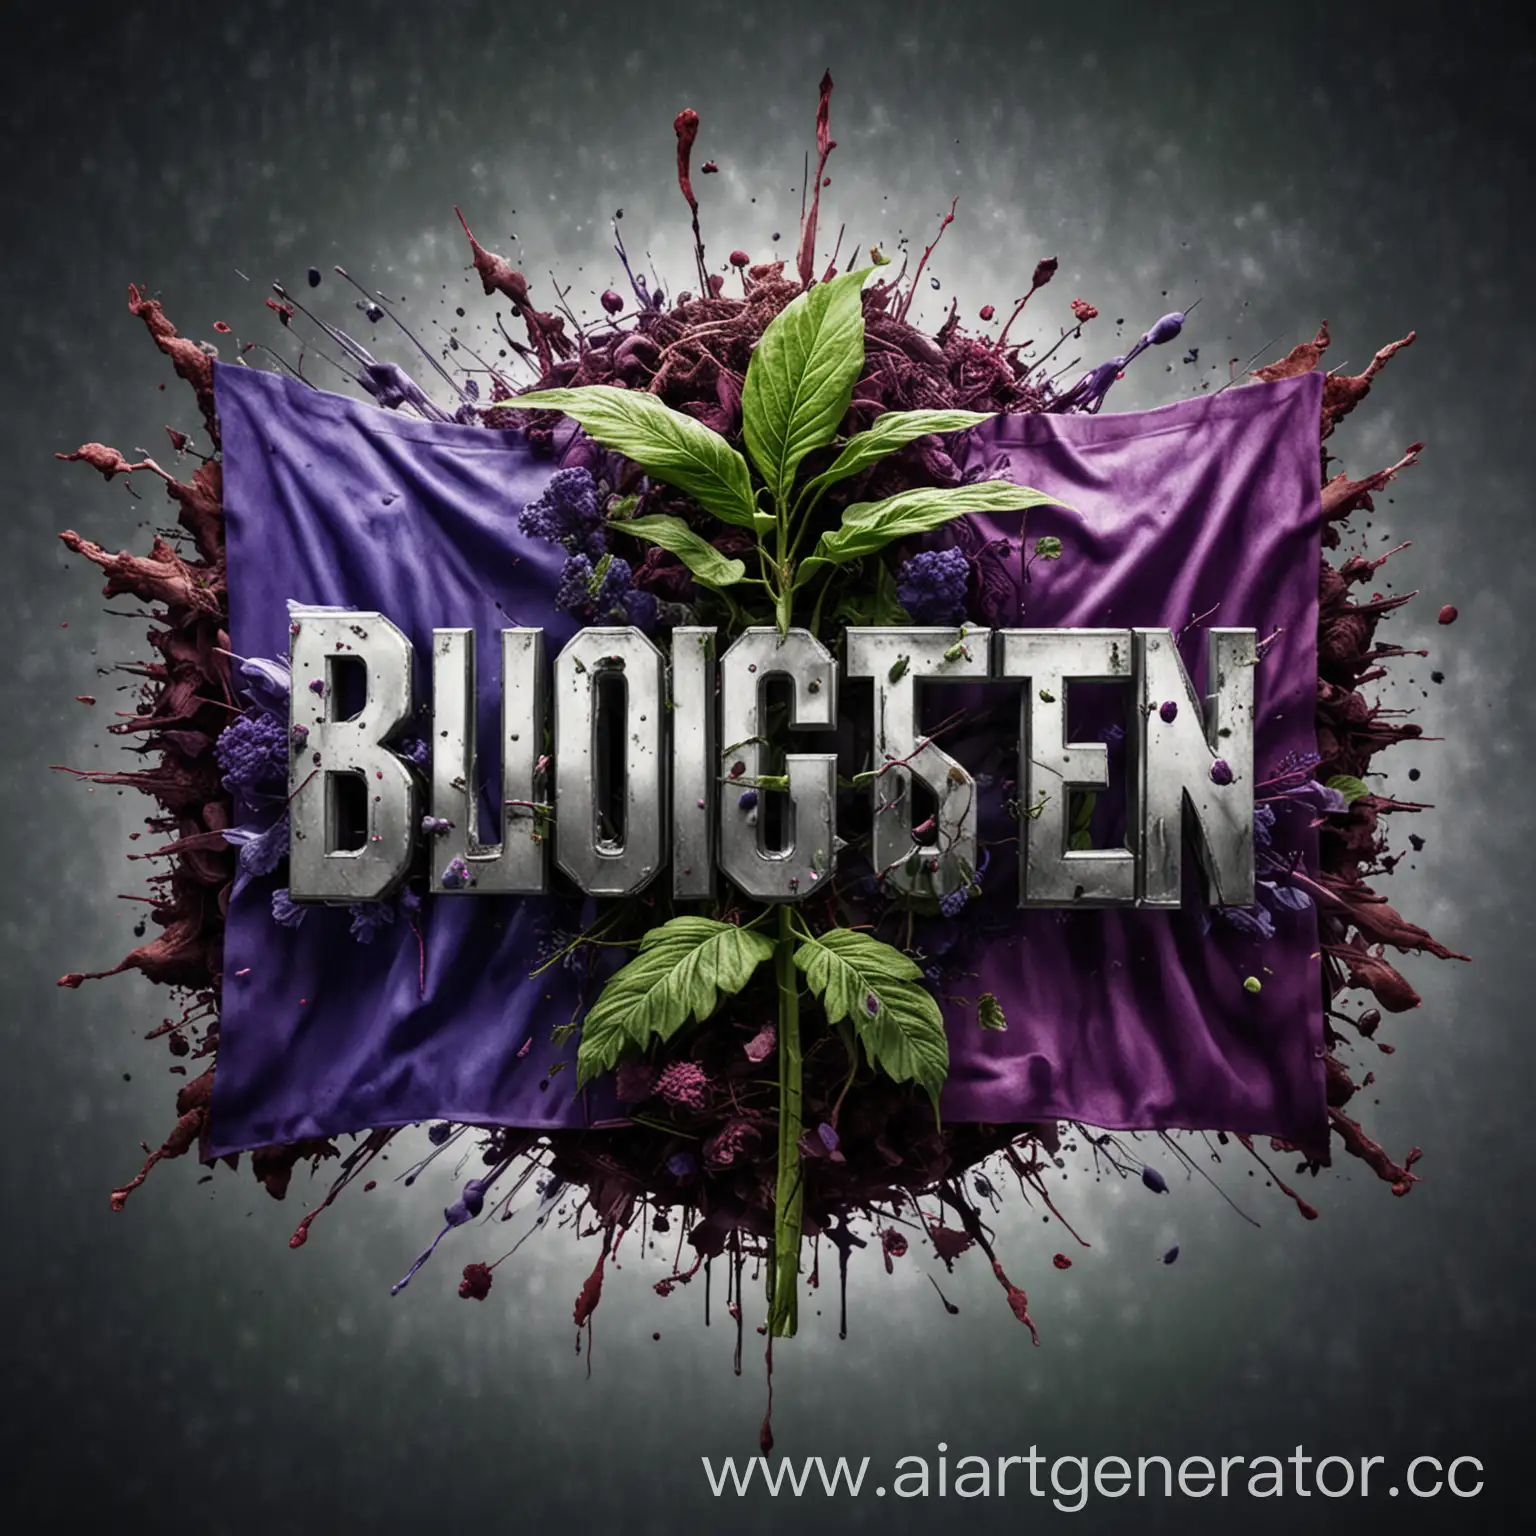 логотип биологии абстрактно цветной много зелёного и фиолетового растения взрыв погодные условия rammstein флаг германии на фоне